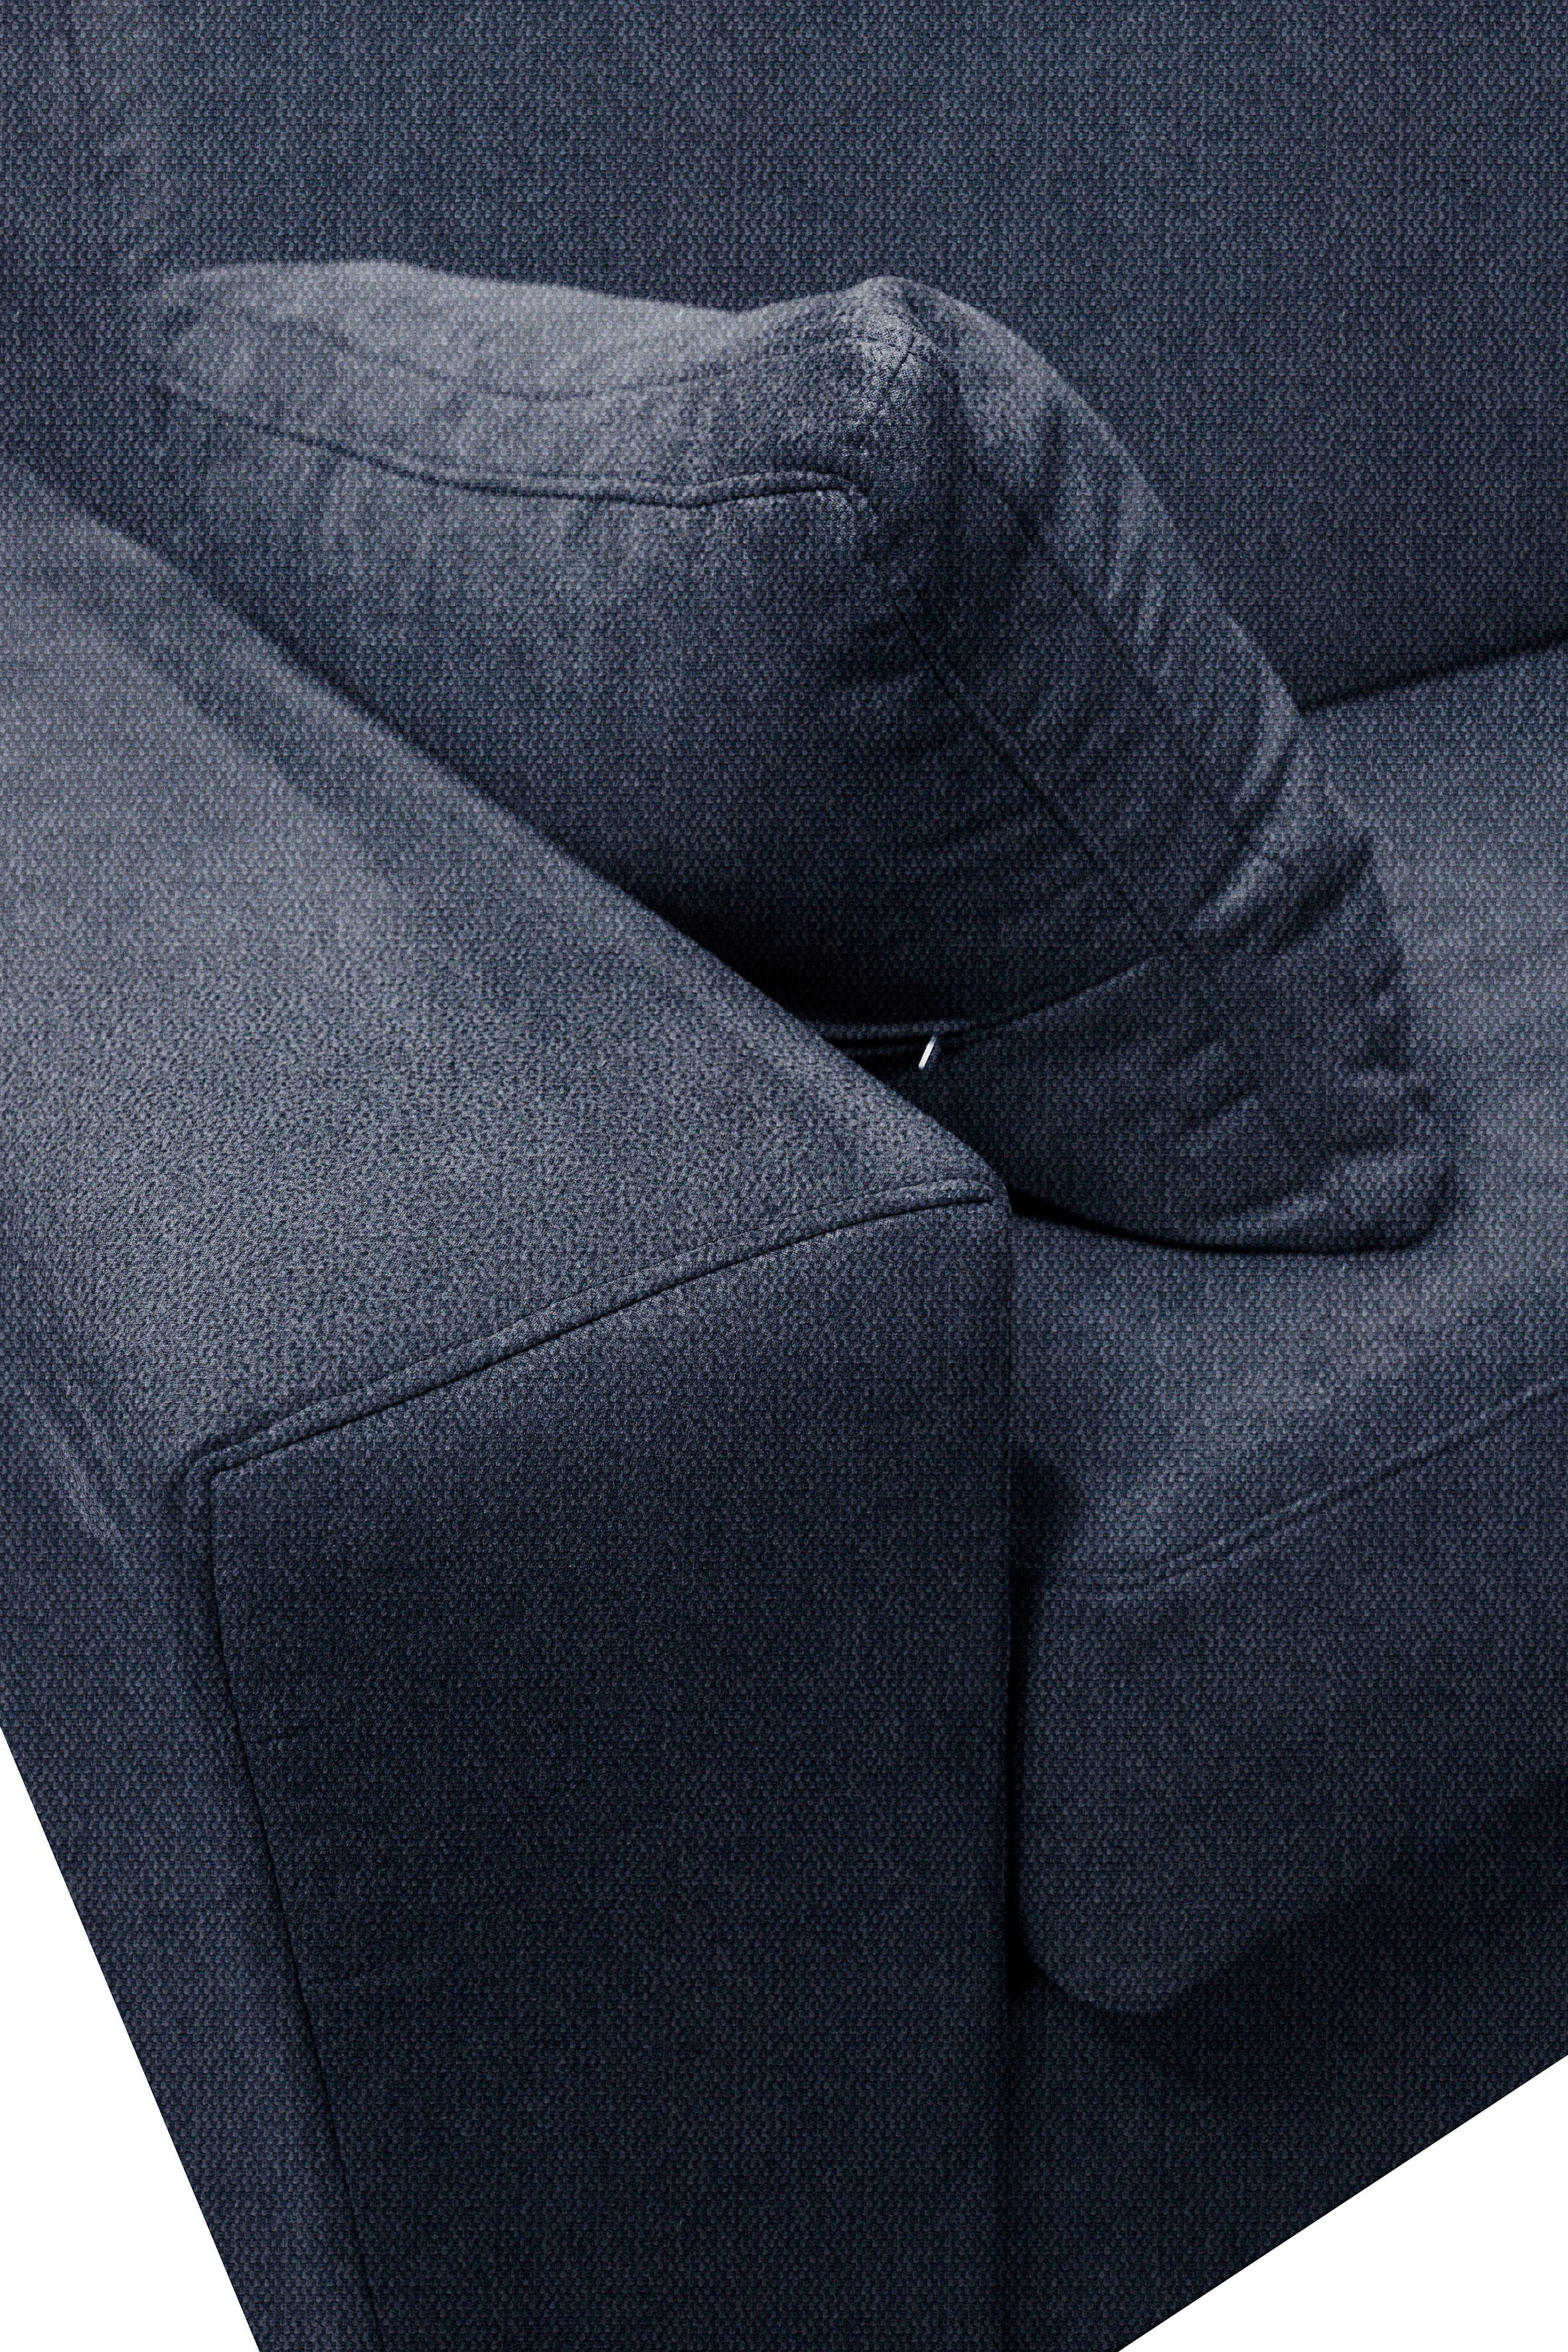 Home affaire Sessel ca mit Roma, cm 83x198 Unterfederung, Liegemaße Dauerschlaffunktion